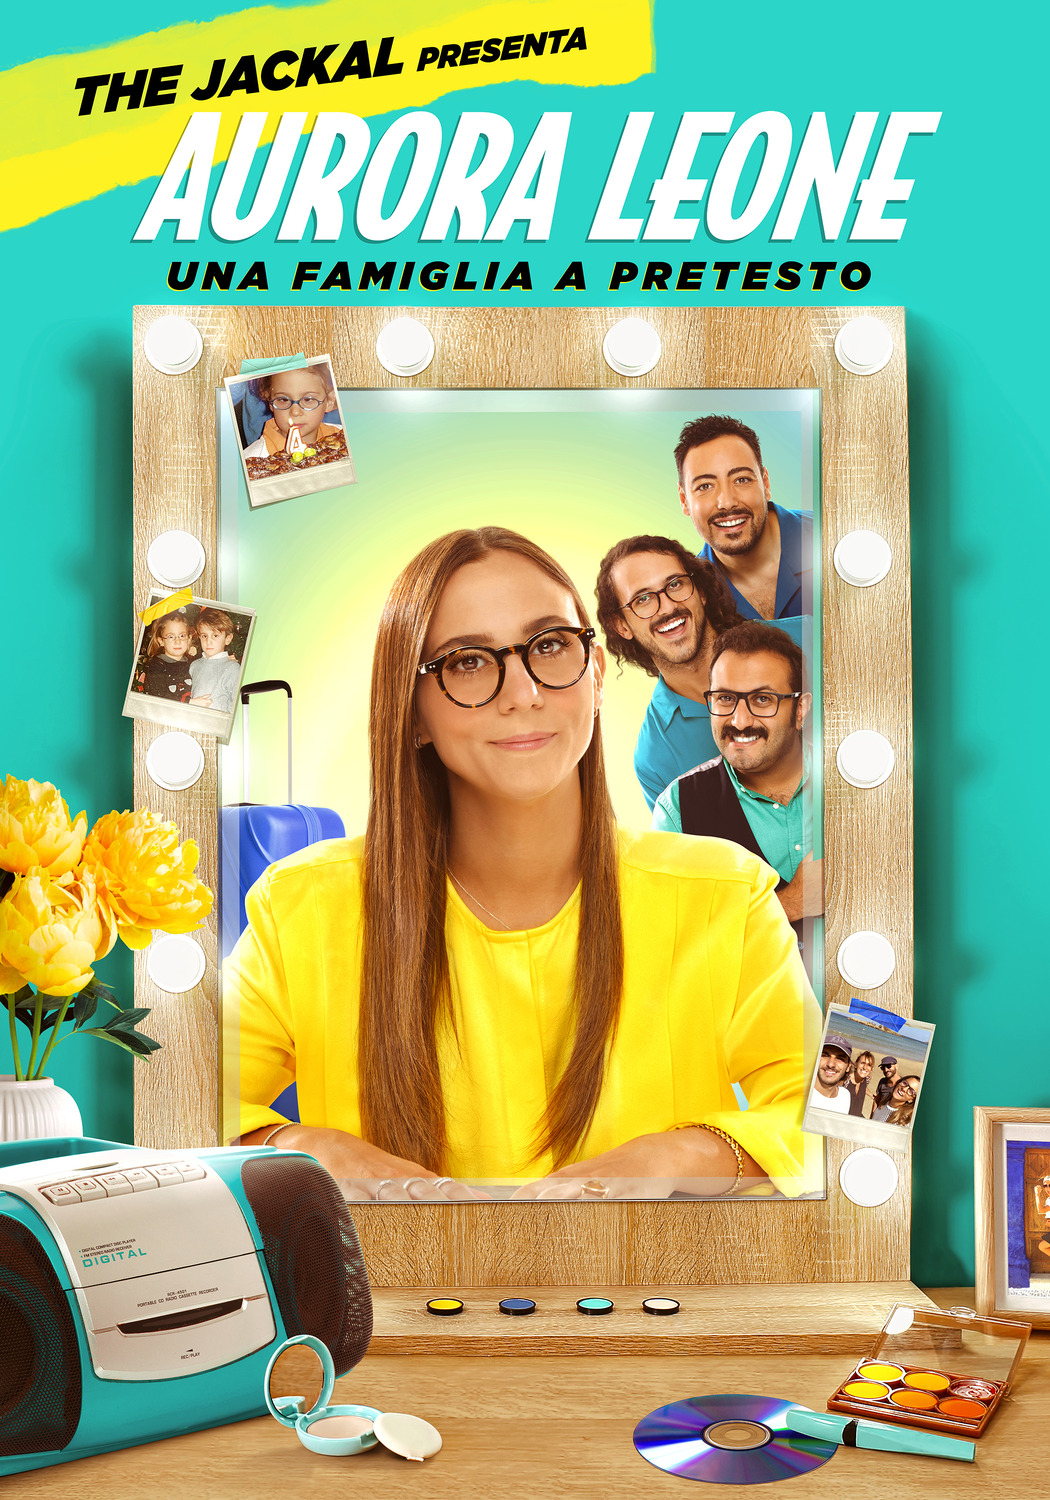 Extra Large TV Poster Image for Aurora Leone: Una Famiglia a Pretesto 